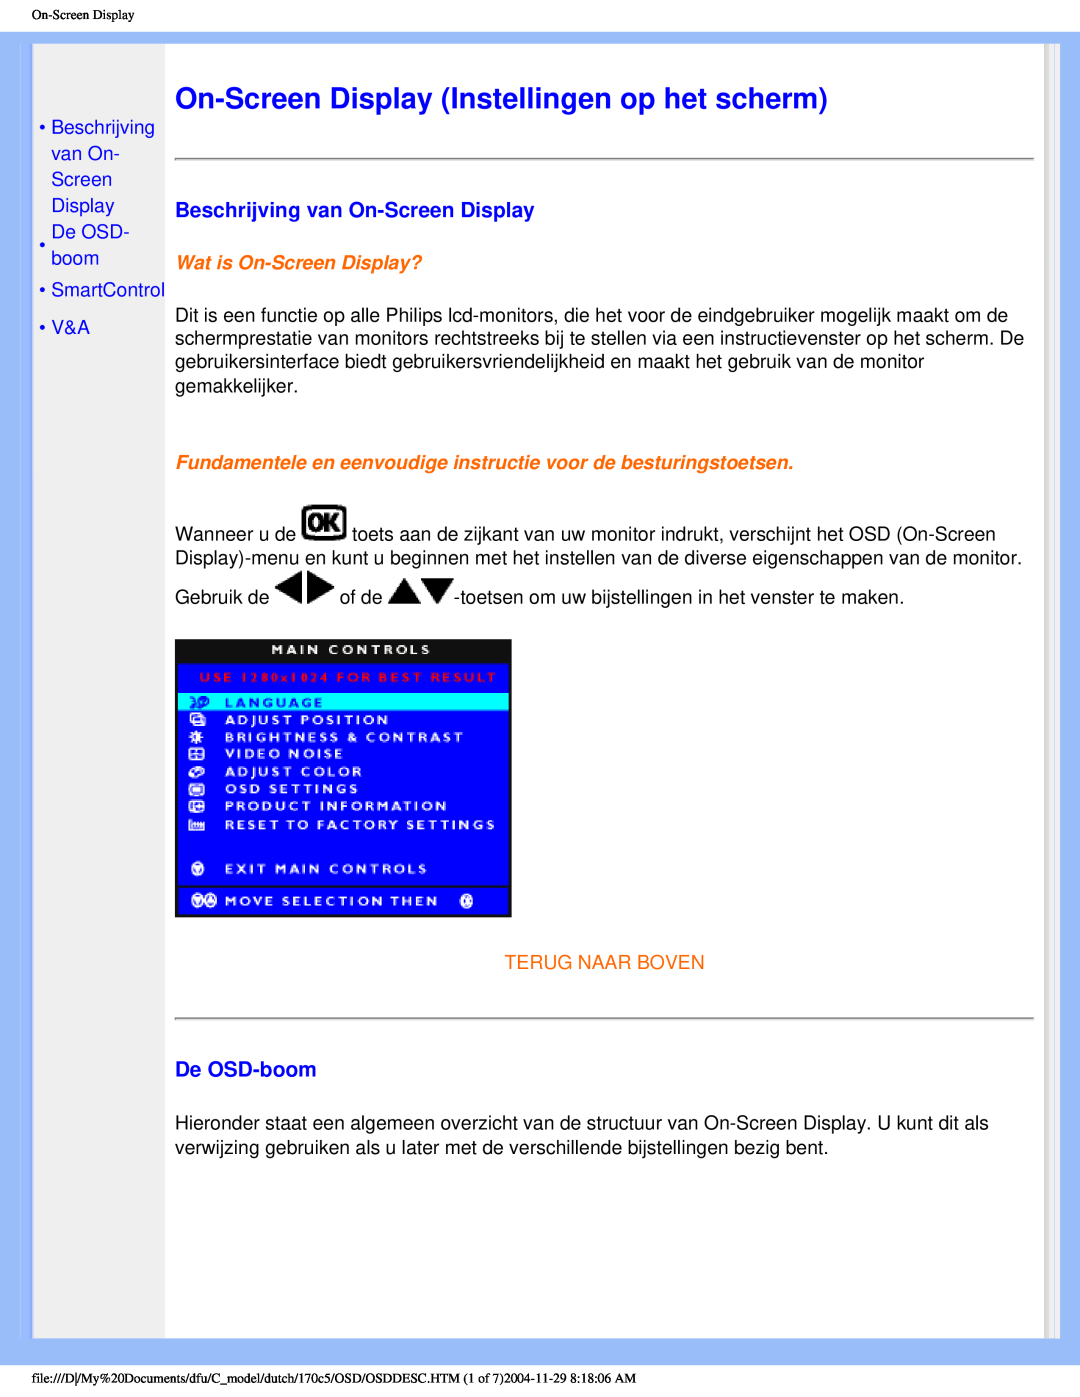 Philips 170C5 user manual On-Screen Display Instellingen op het scherm, Beschrijving van On-Screen Display, De OSD-boom 